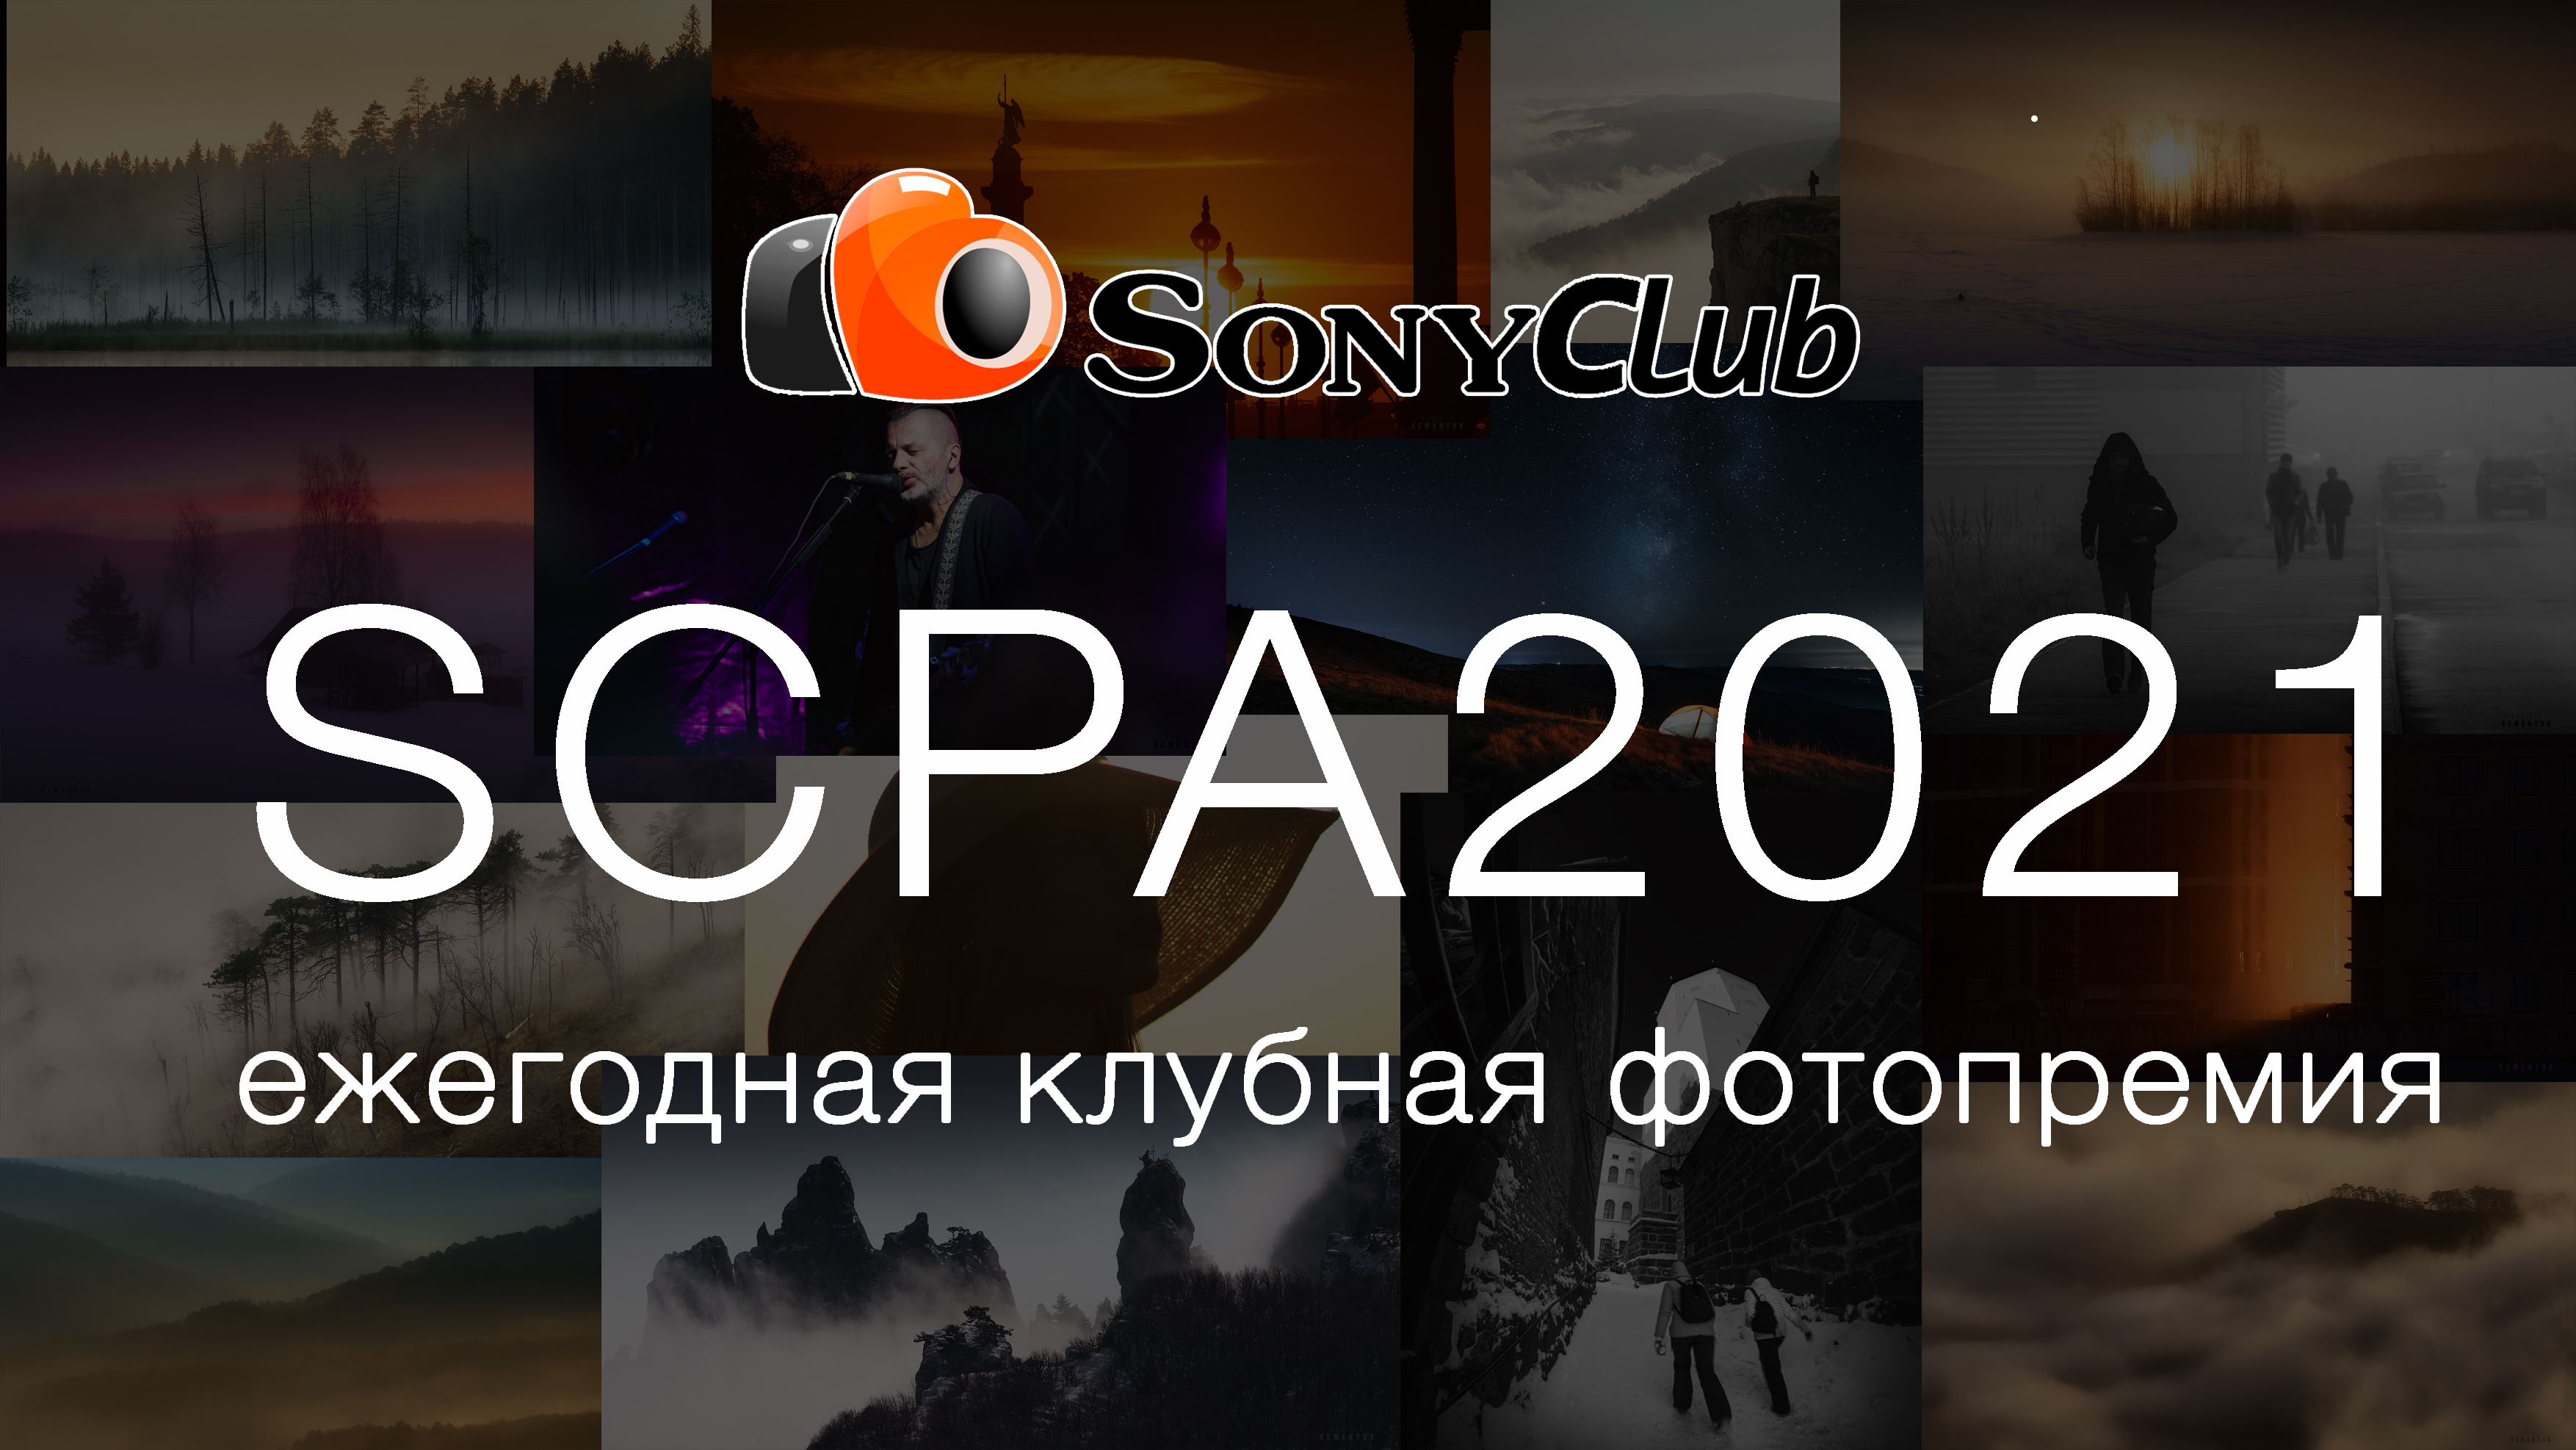 Объявлены финалисты ежегодной клубной фотопремии SCPA2021